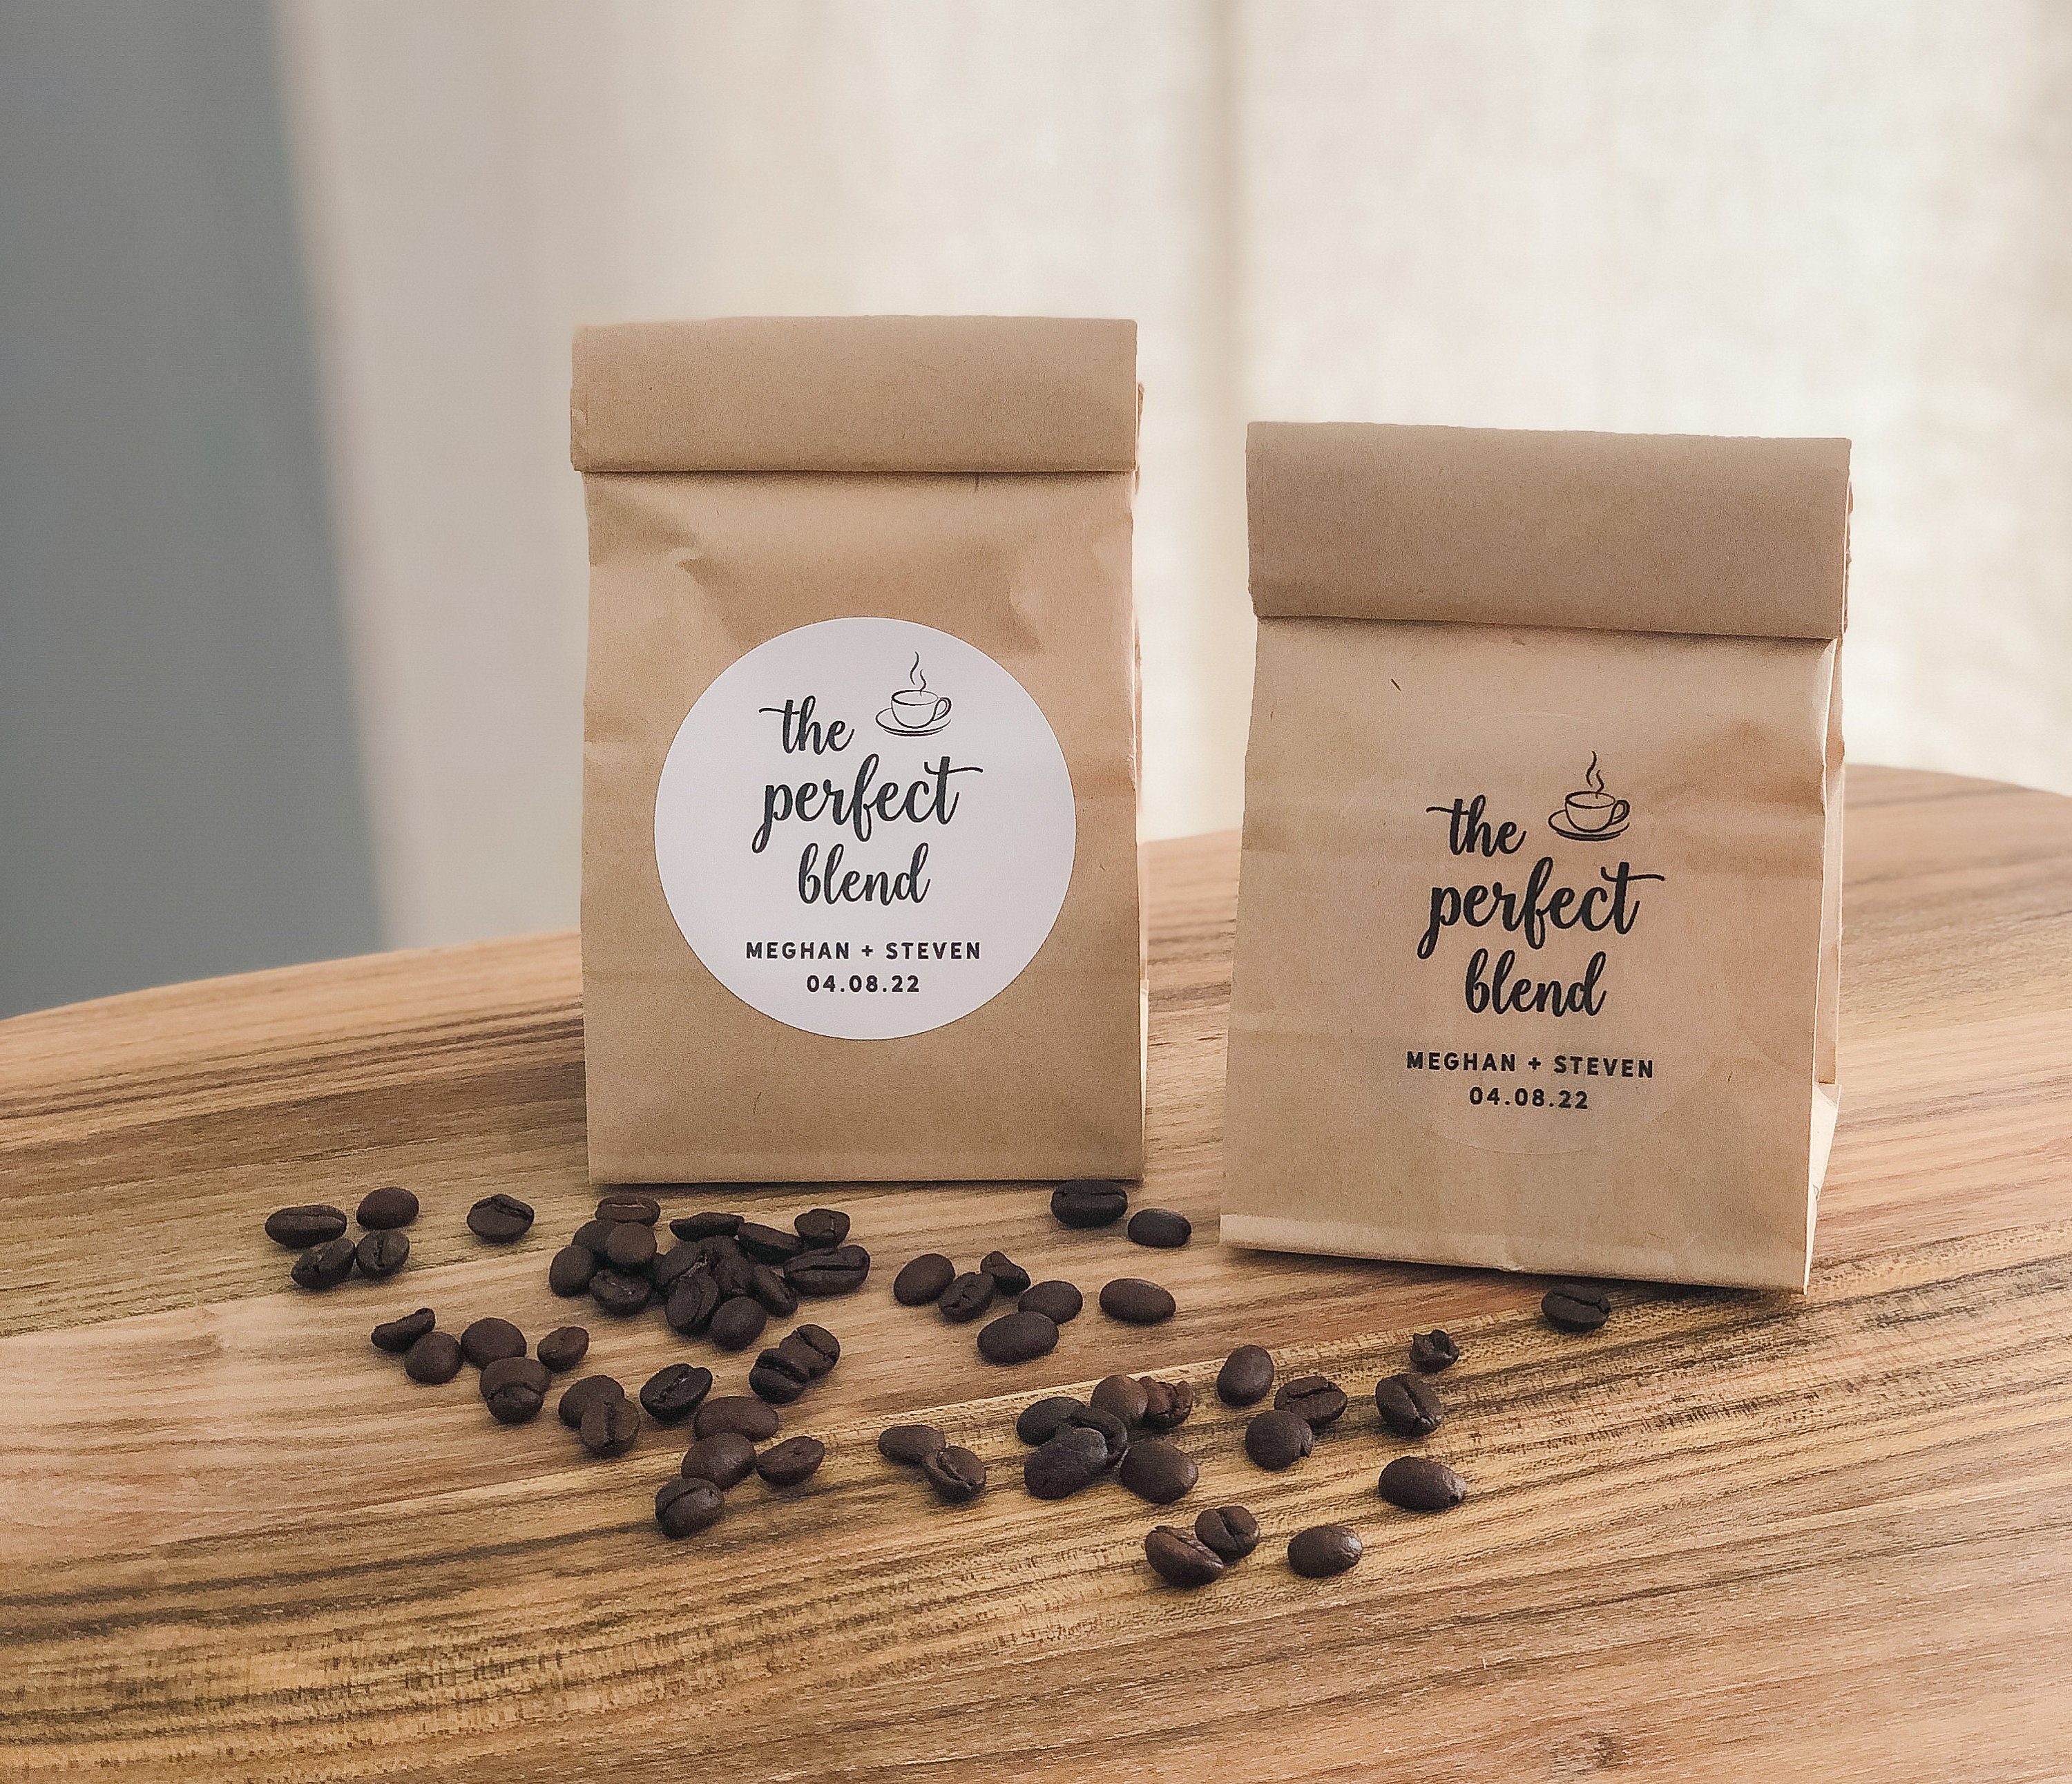 બજારમાં કોફી પેકેજીંગનો મુખ્ય પ્રકાર અને કોફી પેકેજની નોંધ કરો